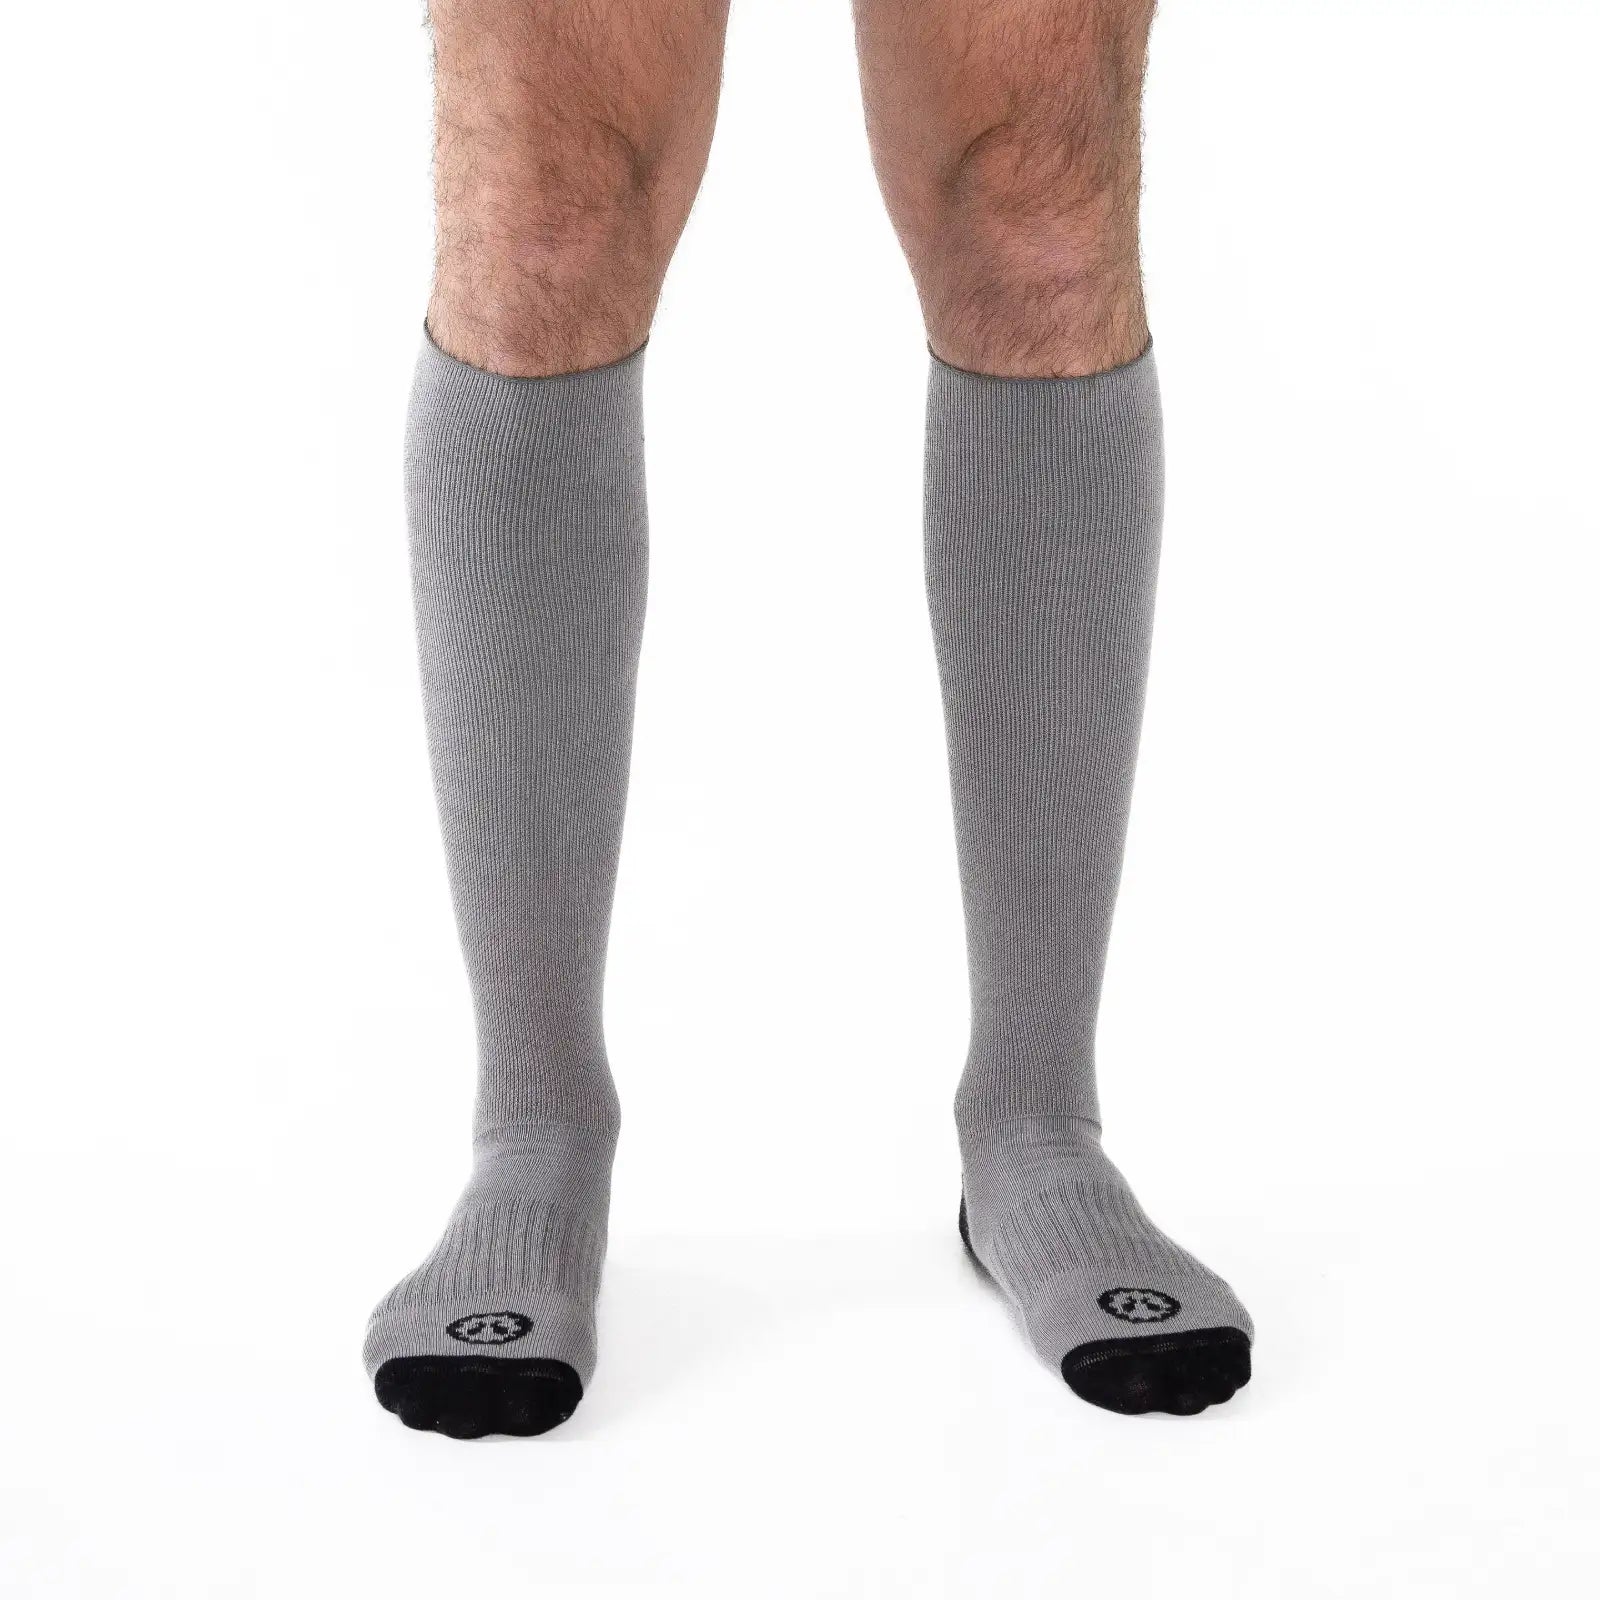 Medias de Compresion Mujer Hombre Calcetines Compresivos para Deporte Knee  High